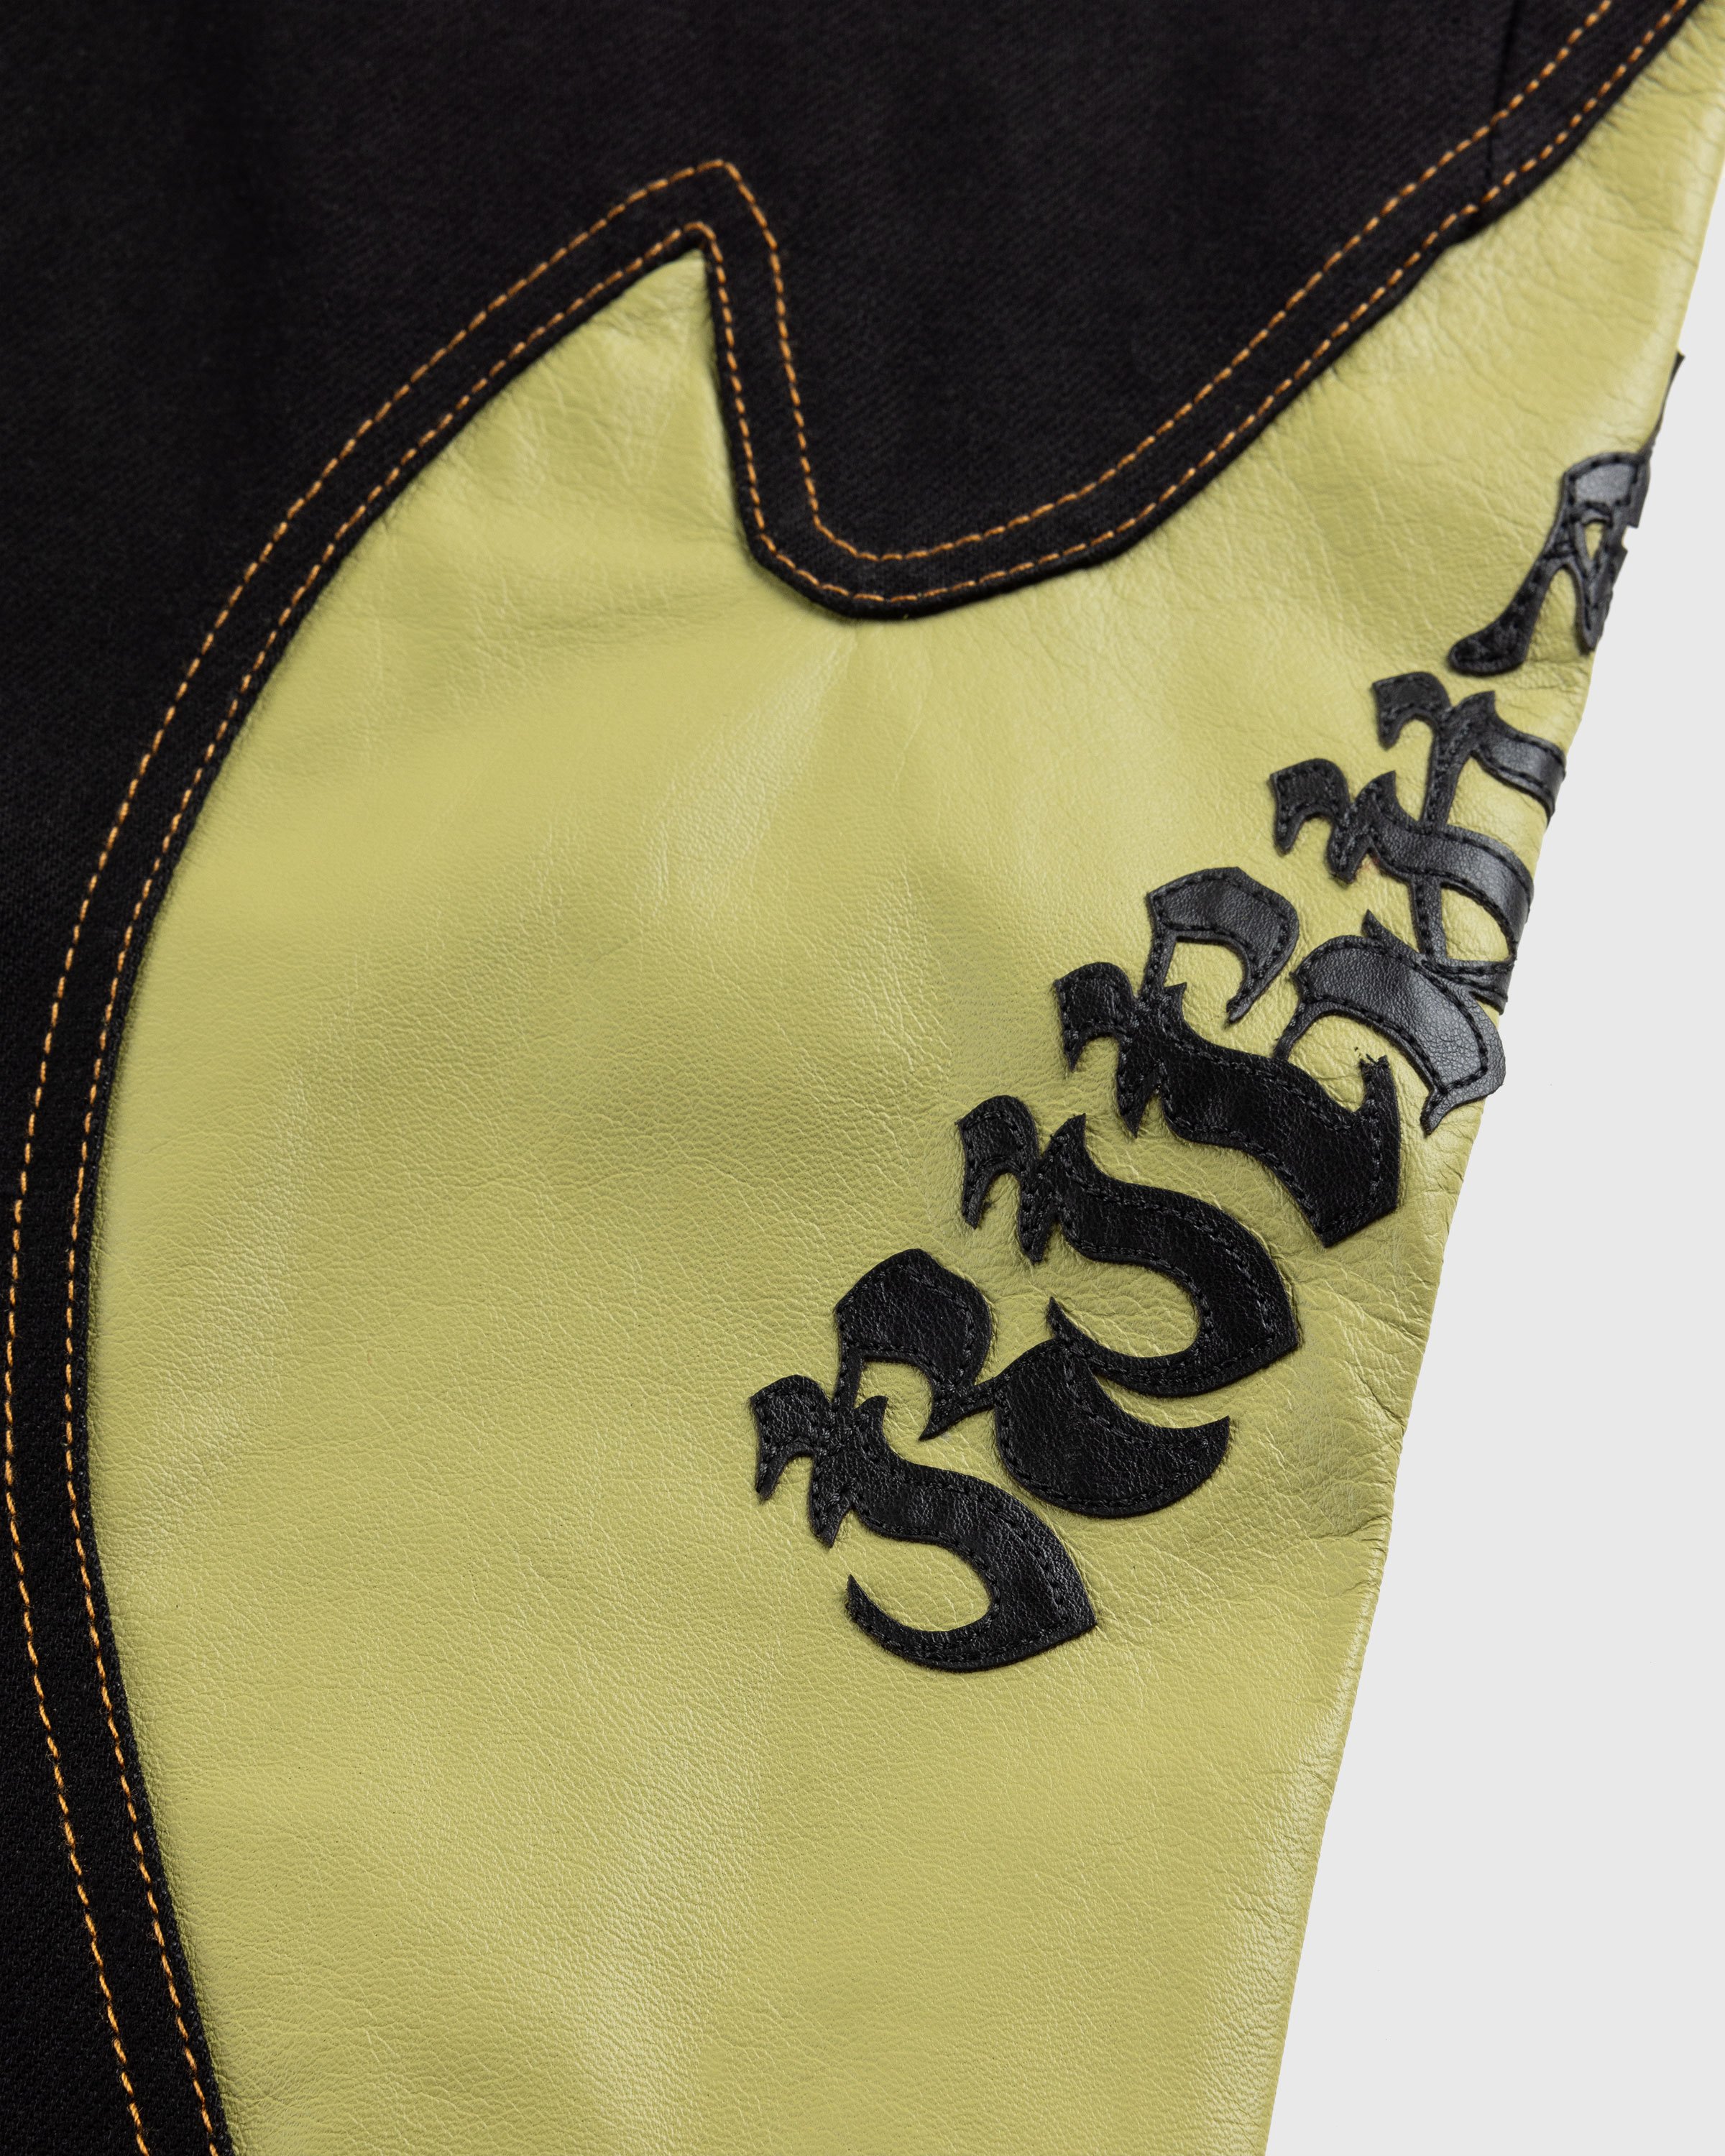 KUSIKOHC - Rider Leather Denim Mix Pants Black - Clothing - BLACK - Image 6